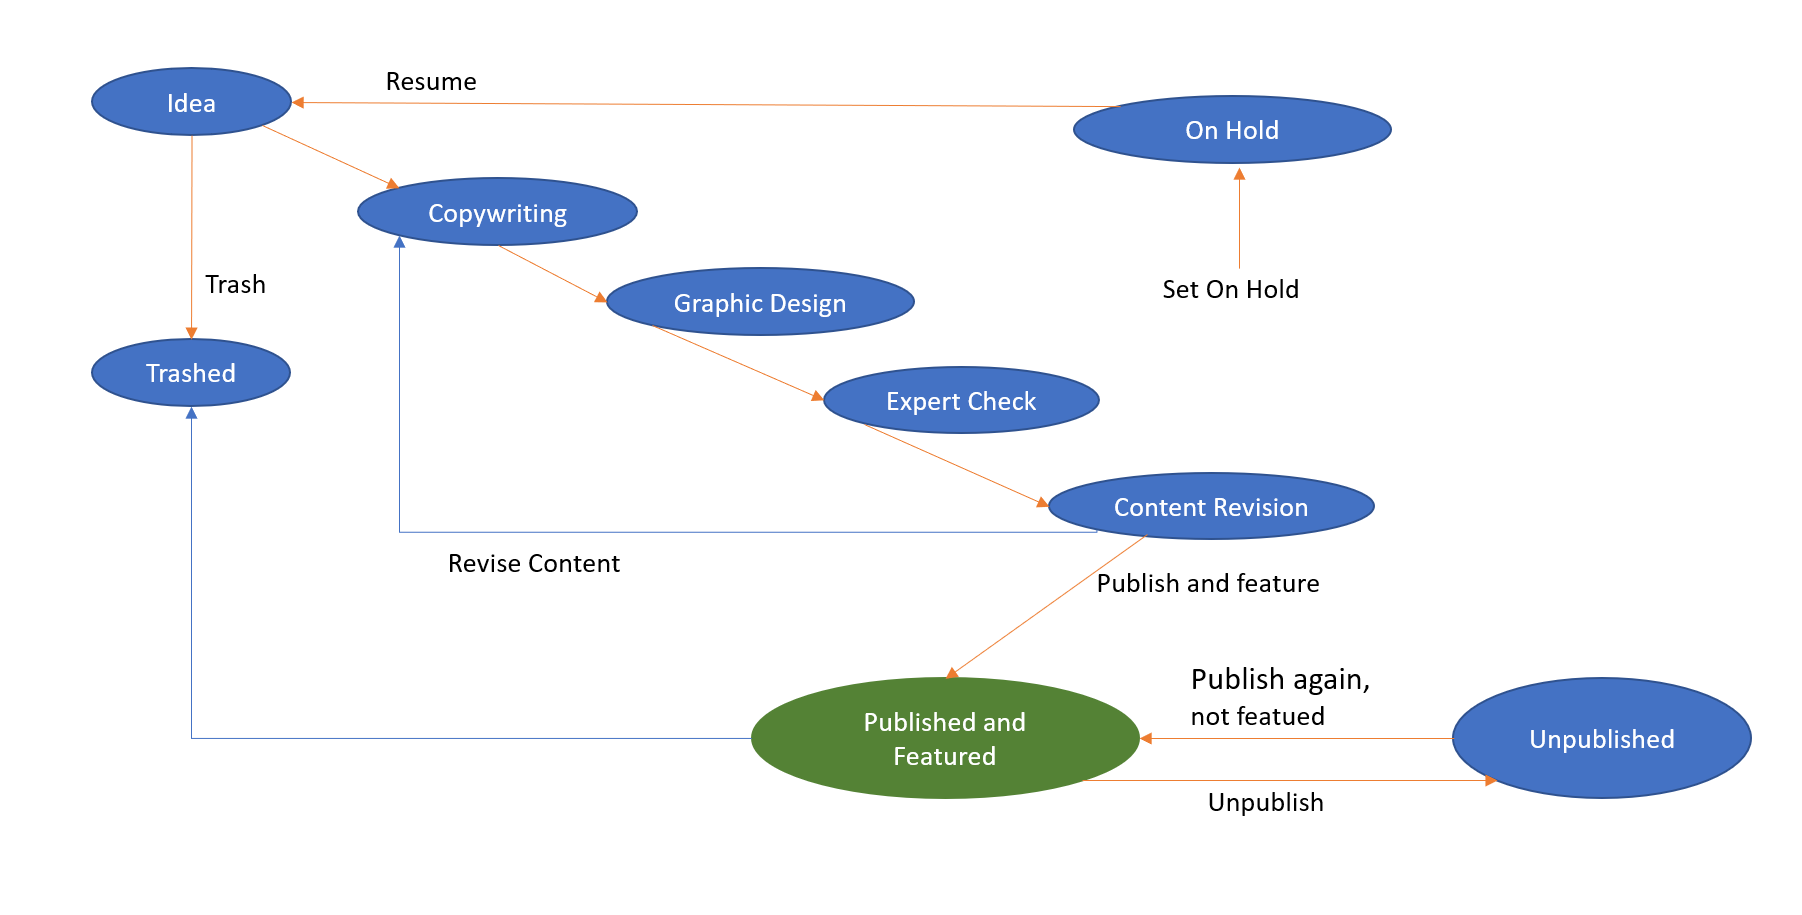 図: サンプル ワークフロー - これは Joomla サンプル データによってインストールされるワークフローです